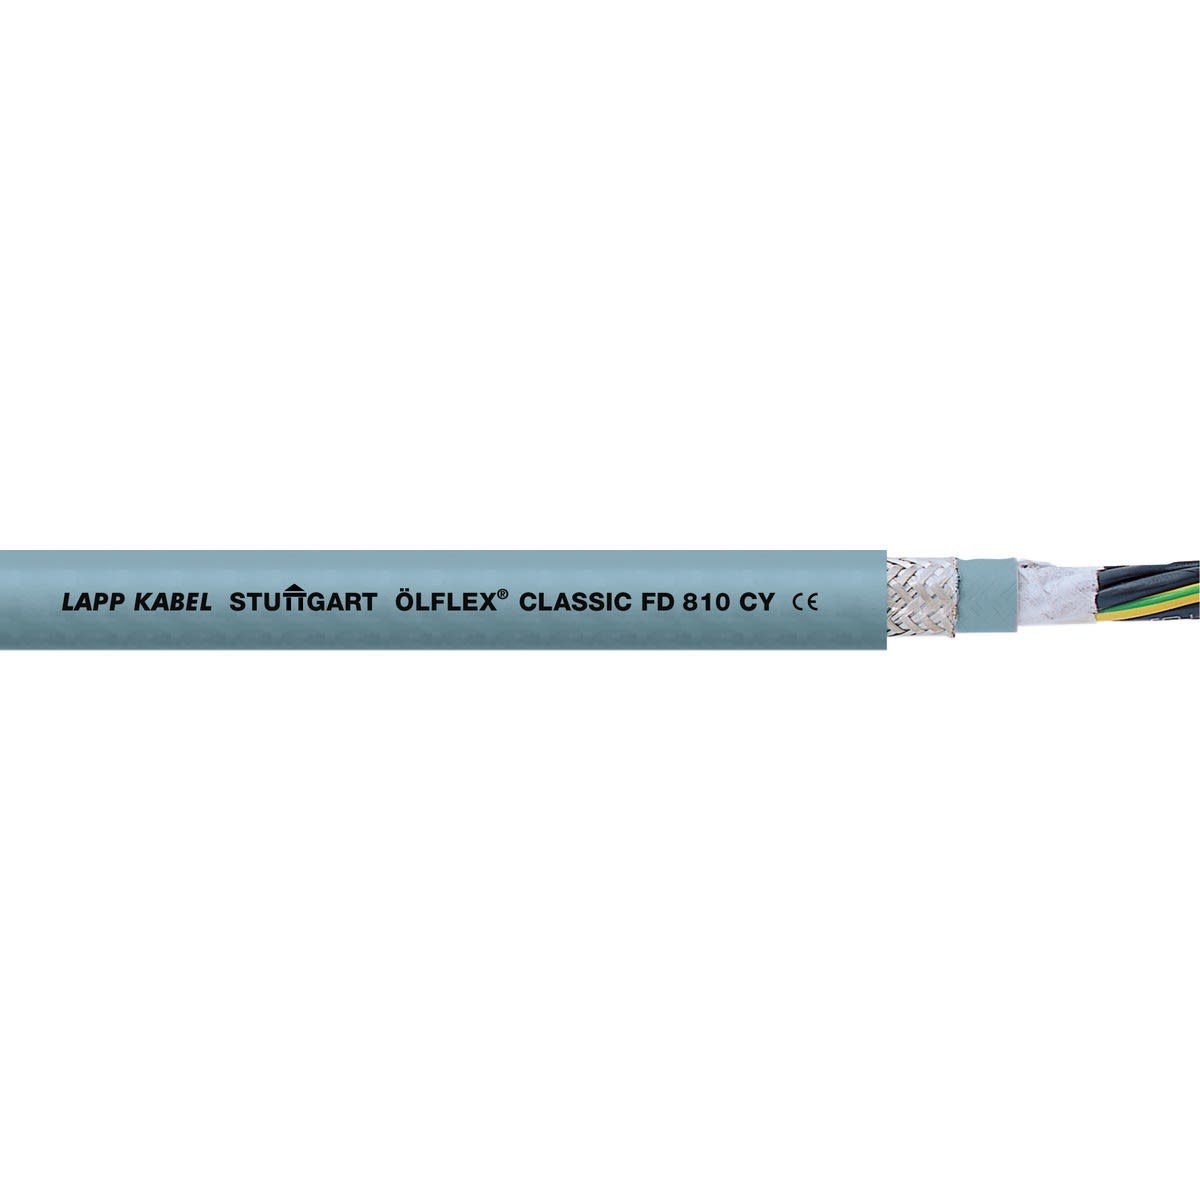 Lapp - ÖLFLEX CLASSIC FD 810 CY 4G6